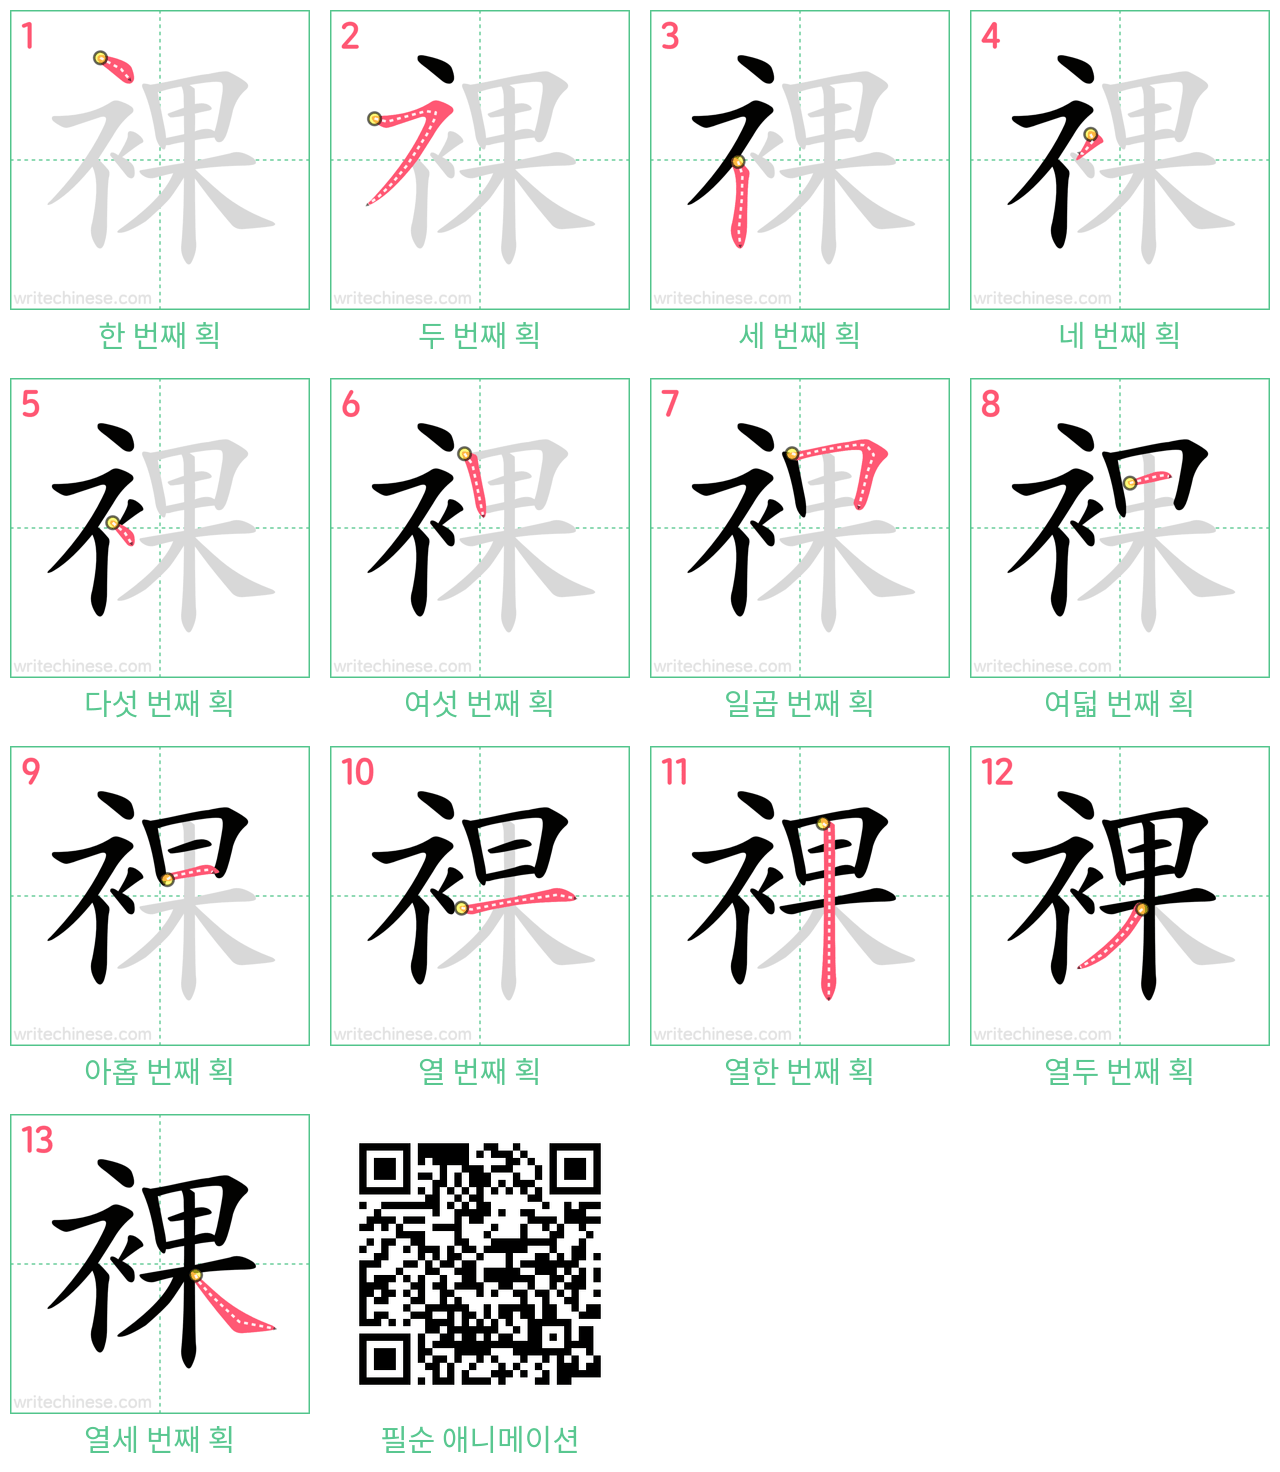 裸 step-by-step stroke order diagrams